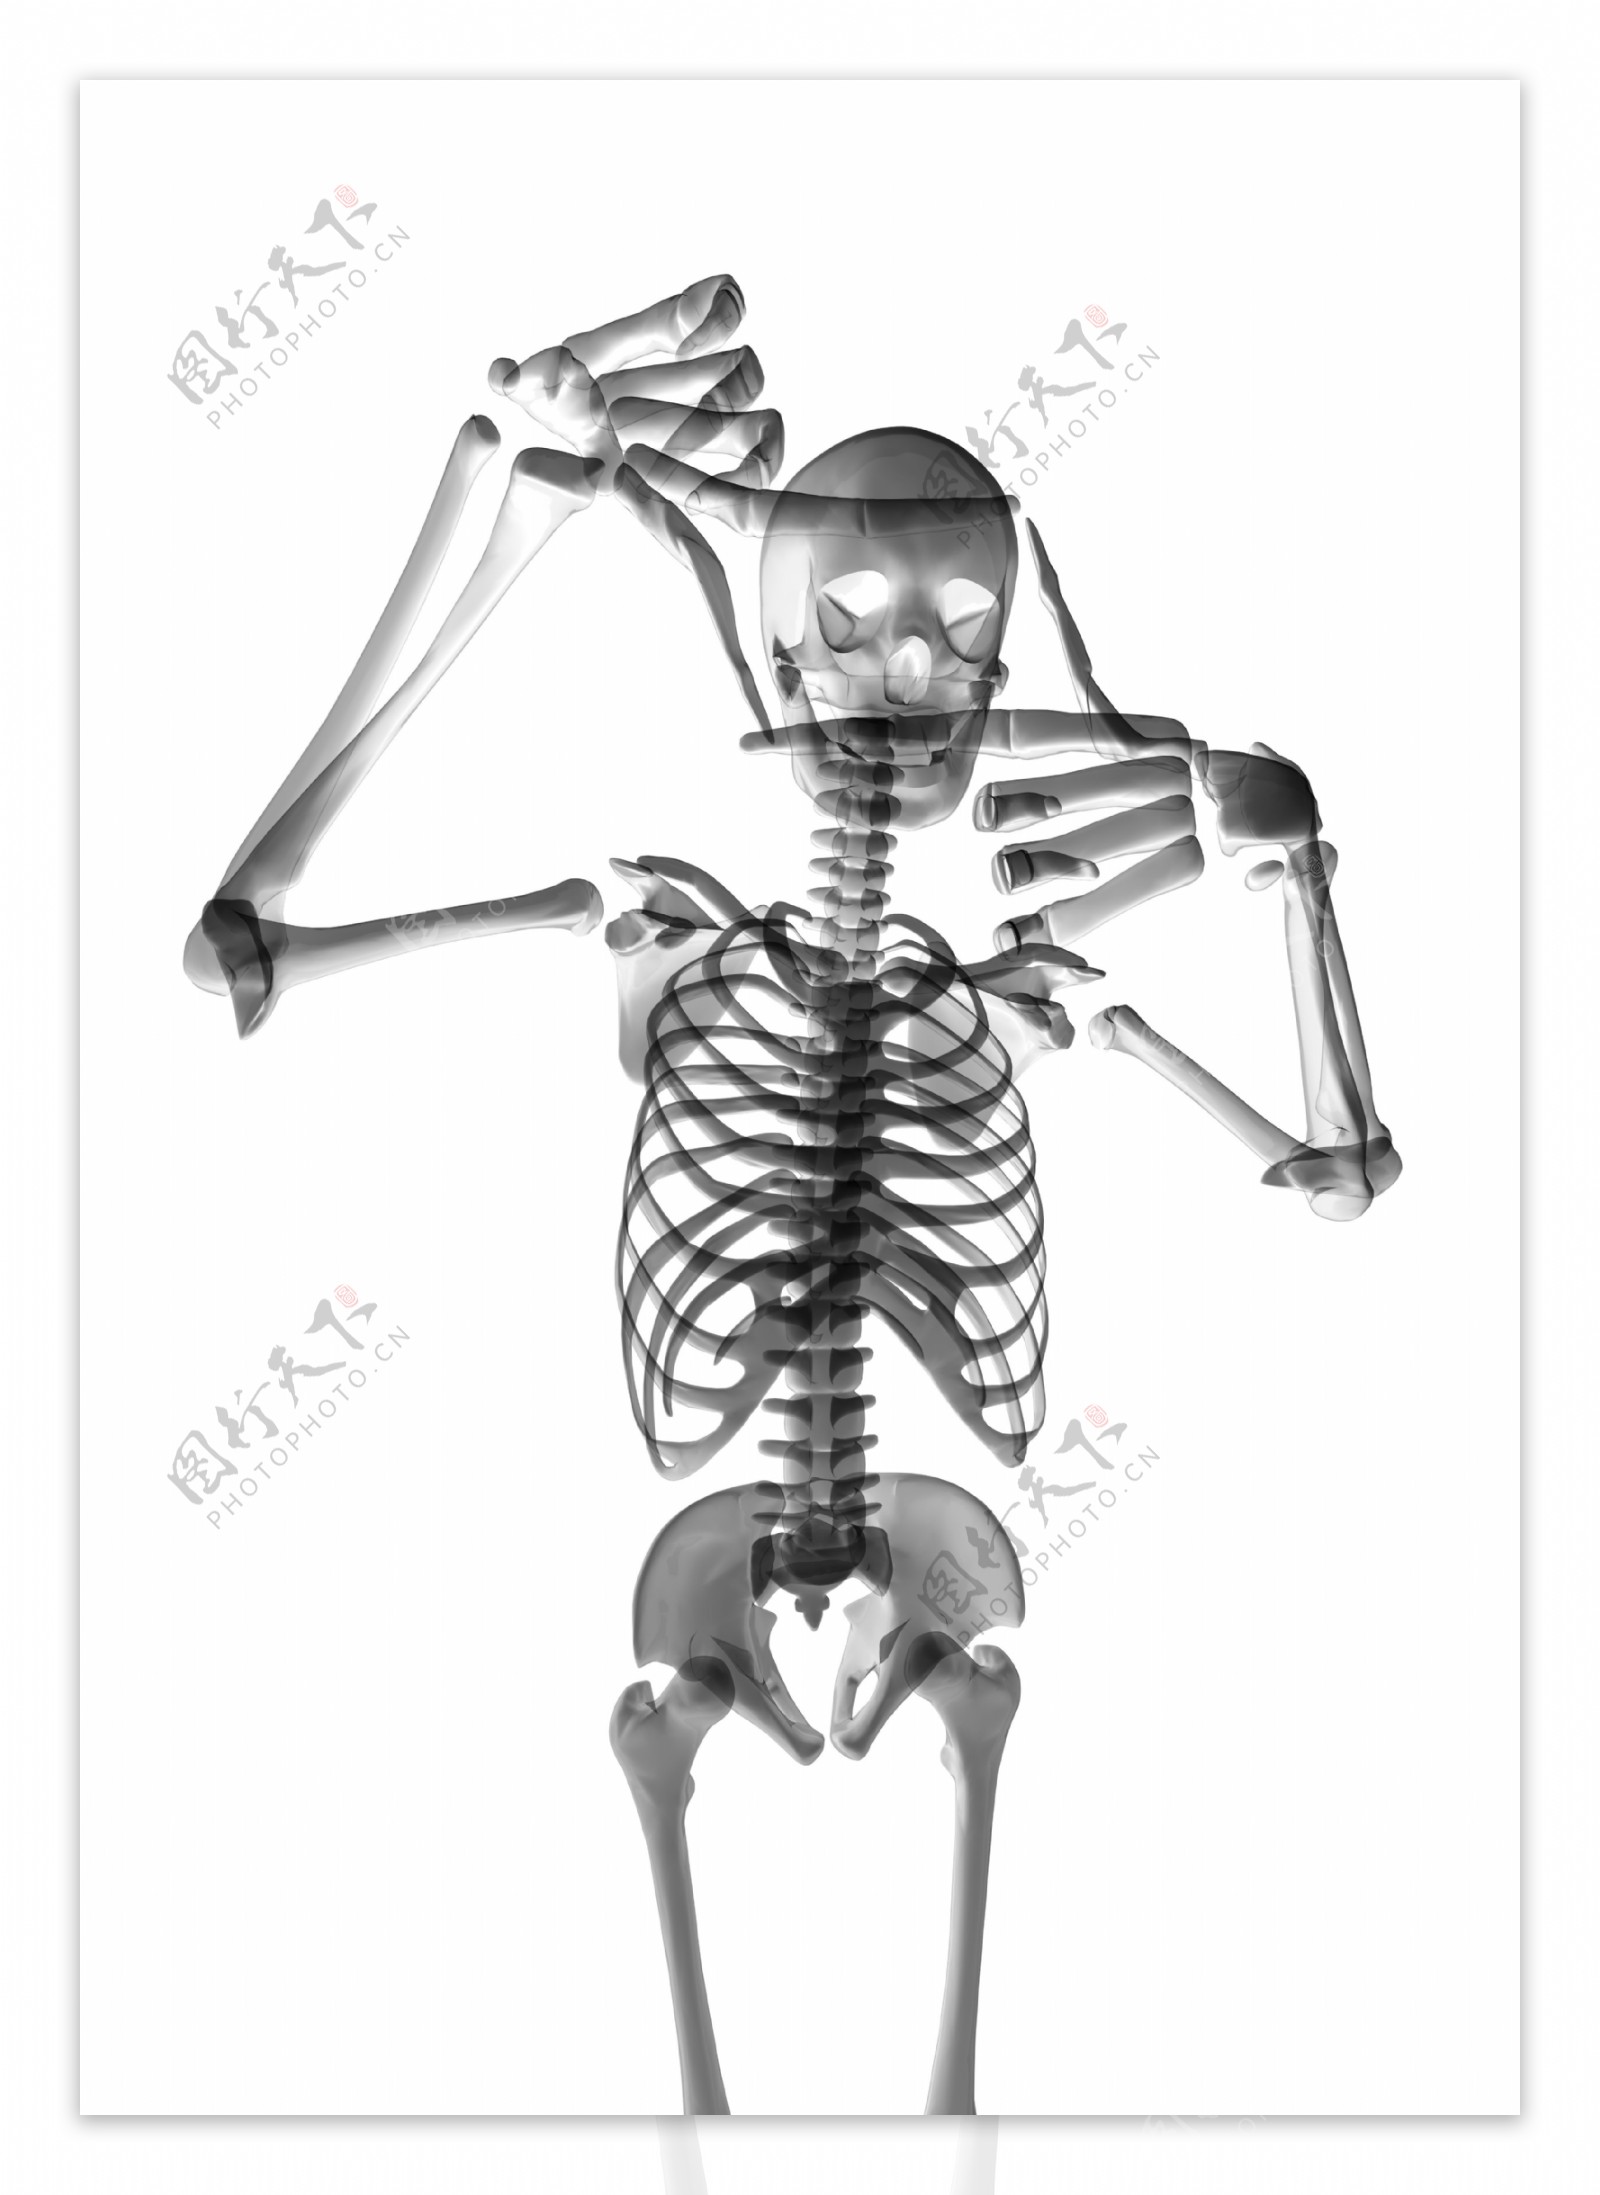 人体骨架运动系列高清